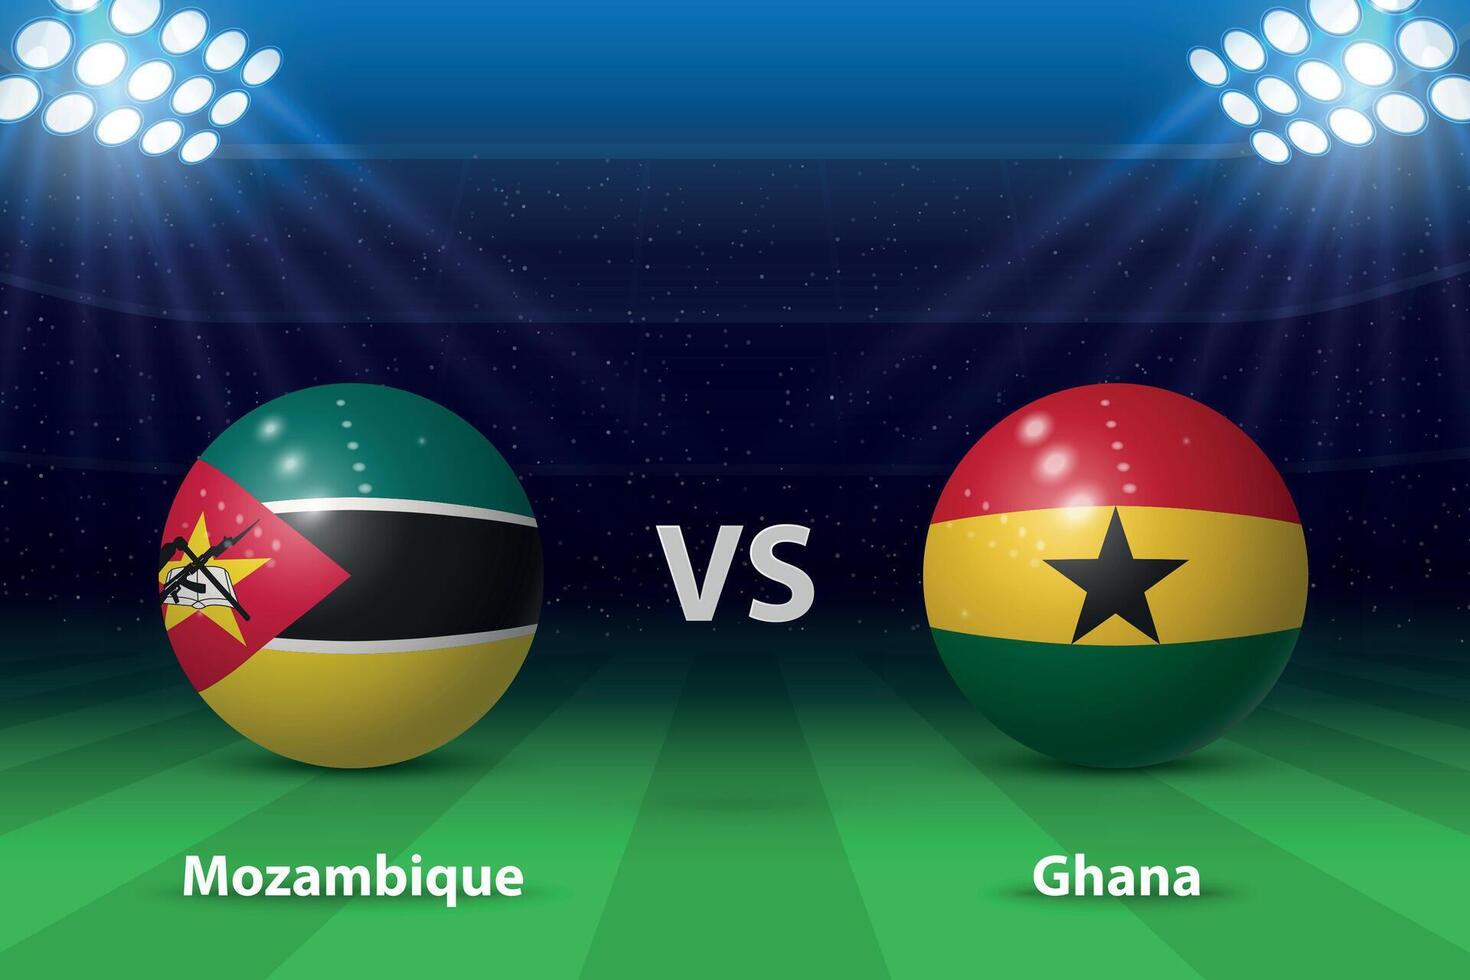 Mozambique vs. Ghana Fußball Anzeigetafel Übertragung Grafik vektor